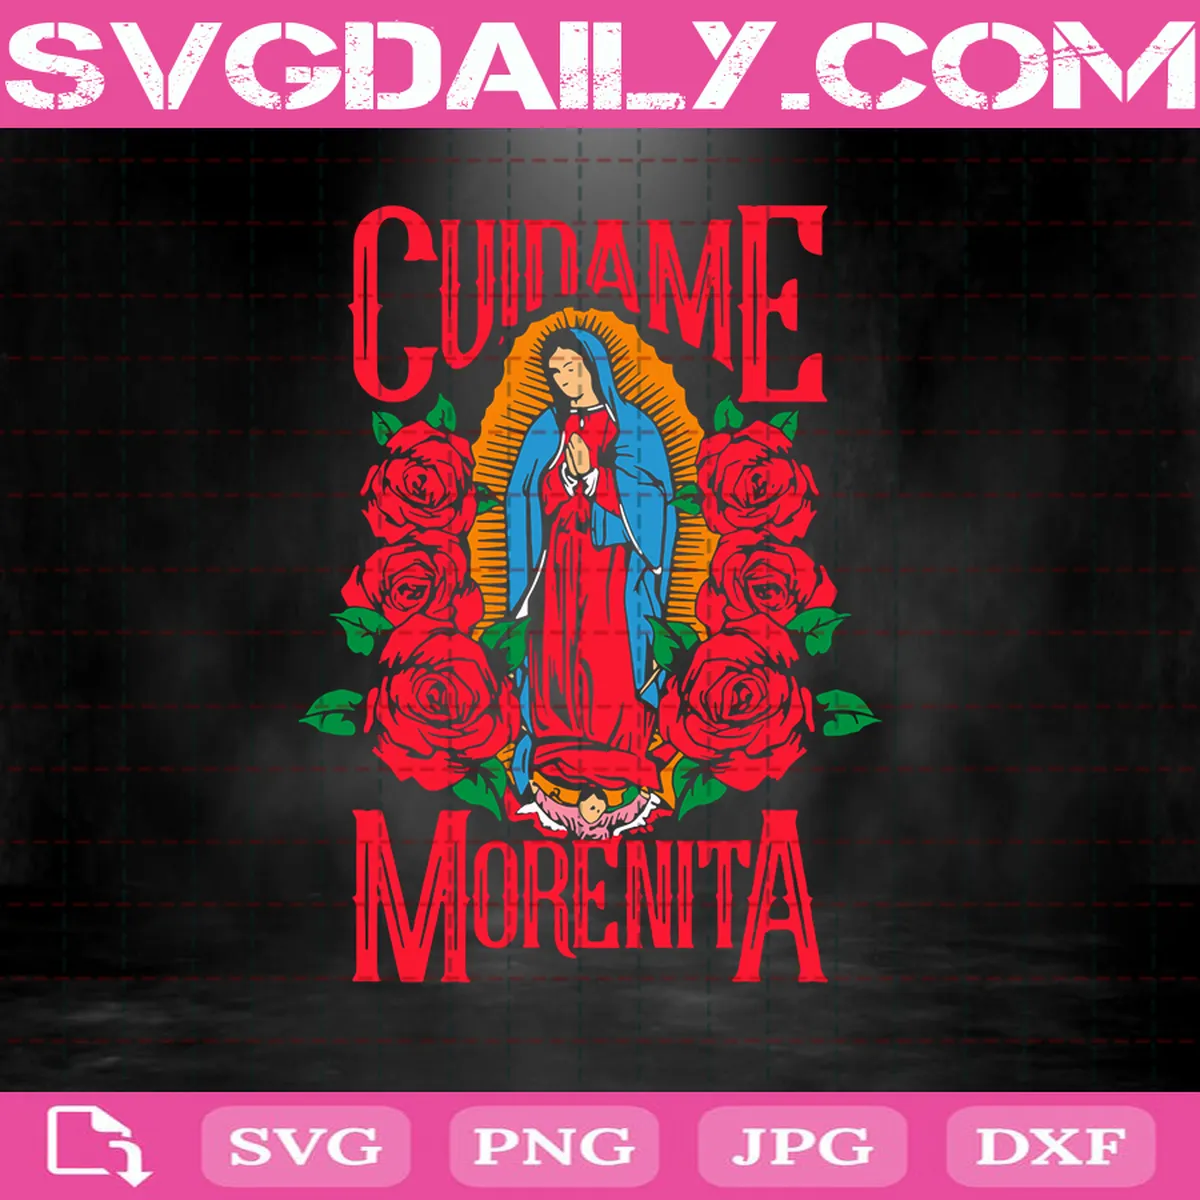 Virgin Of Guadalupe Cuidame Morenita Svg, Cuidame Morenita Svg, Morenita Svg, Guadalupe Svg, Latino Catholics Svg, Christian Svg, Mother Of God Svg, Mother Of Jesus Svg